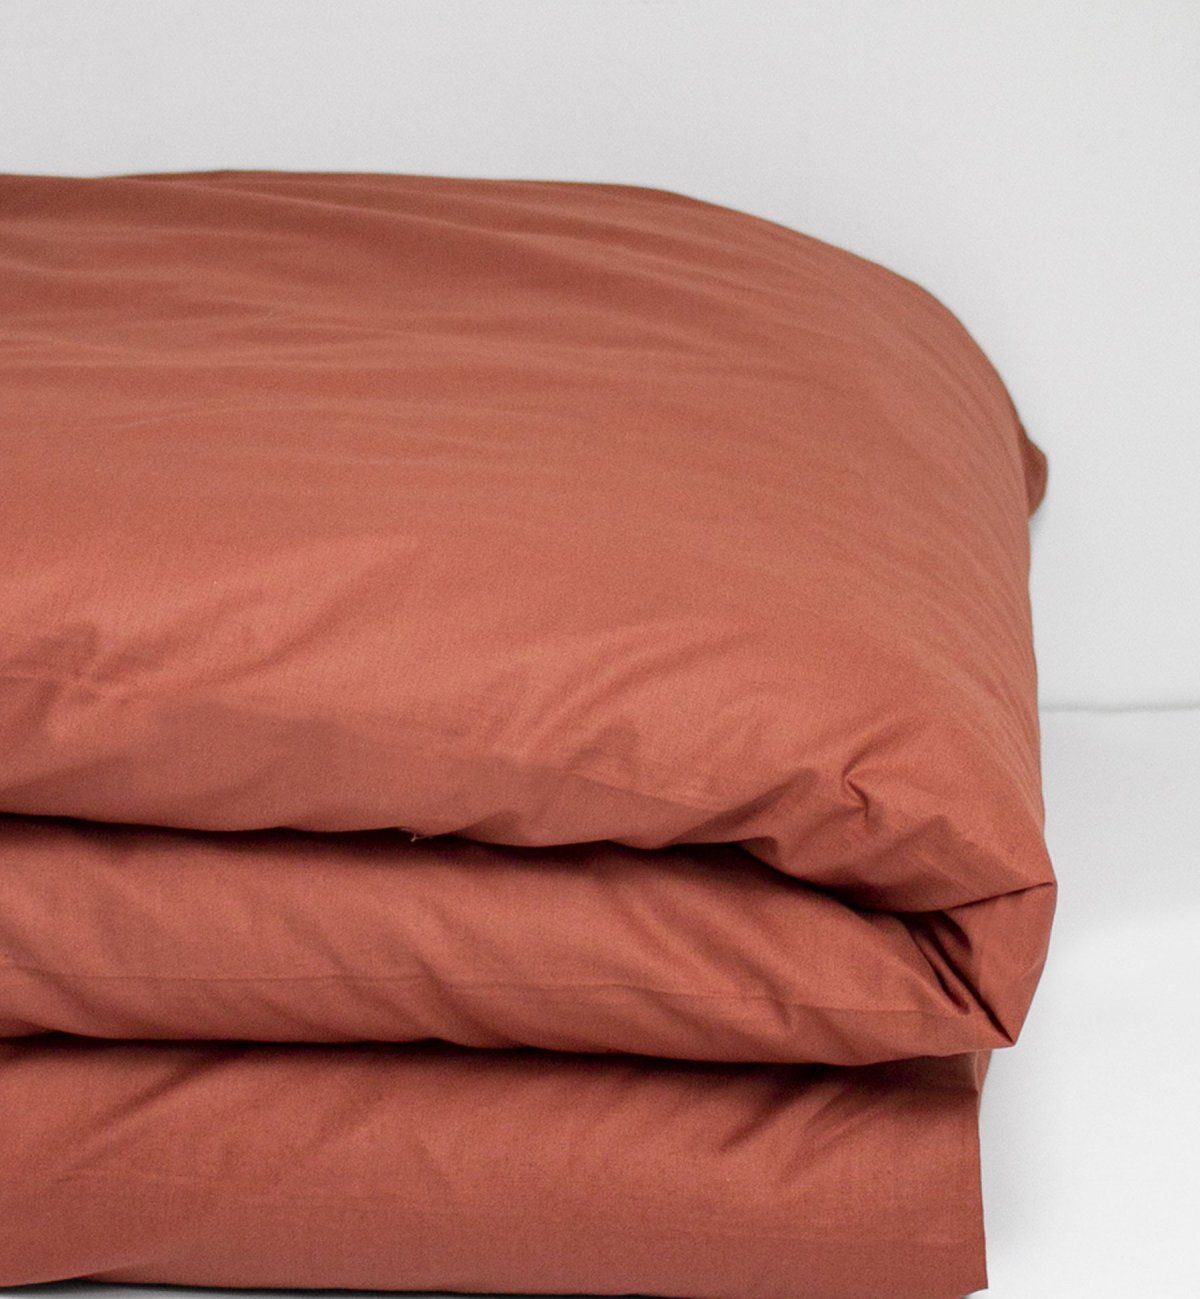 Einzelner Bettbezug aus Bio-Baumwolle für ein Einzelbett